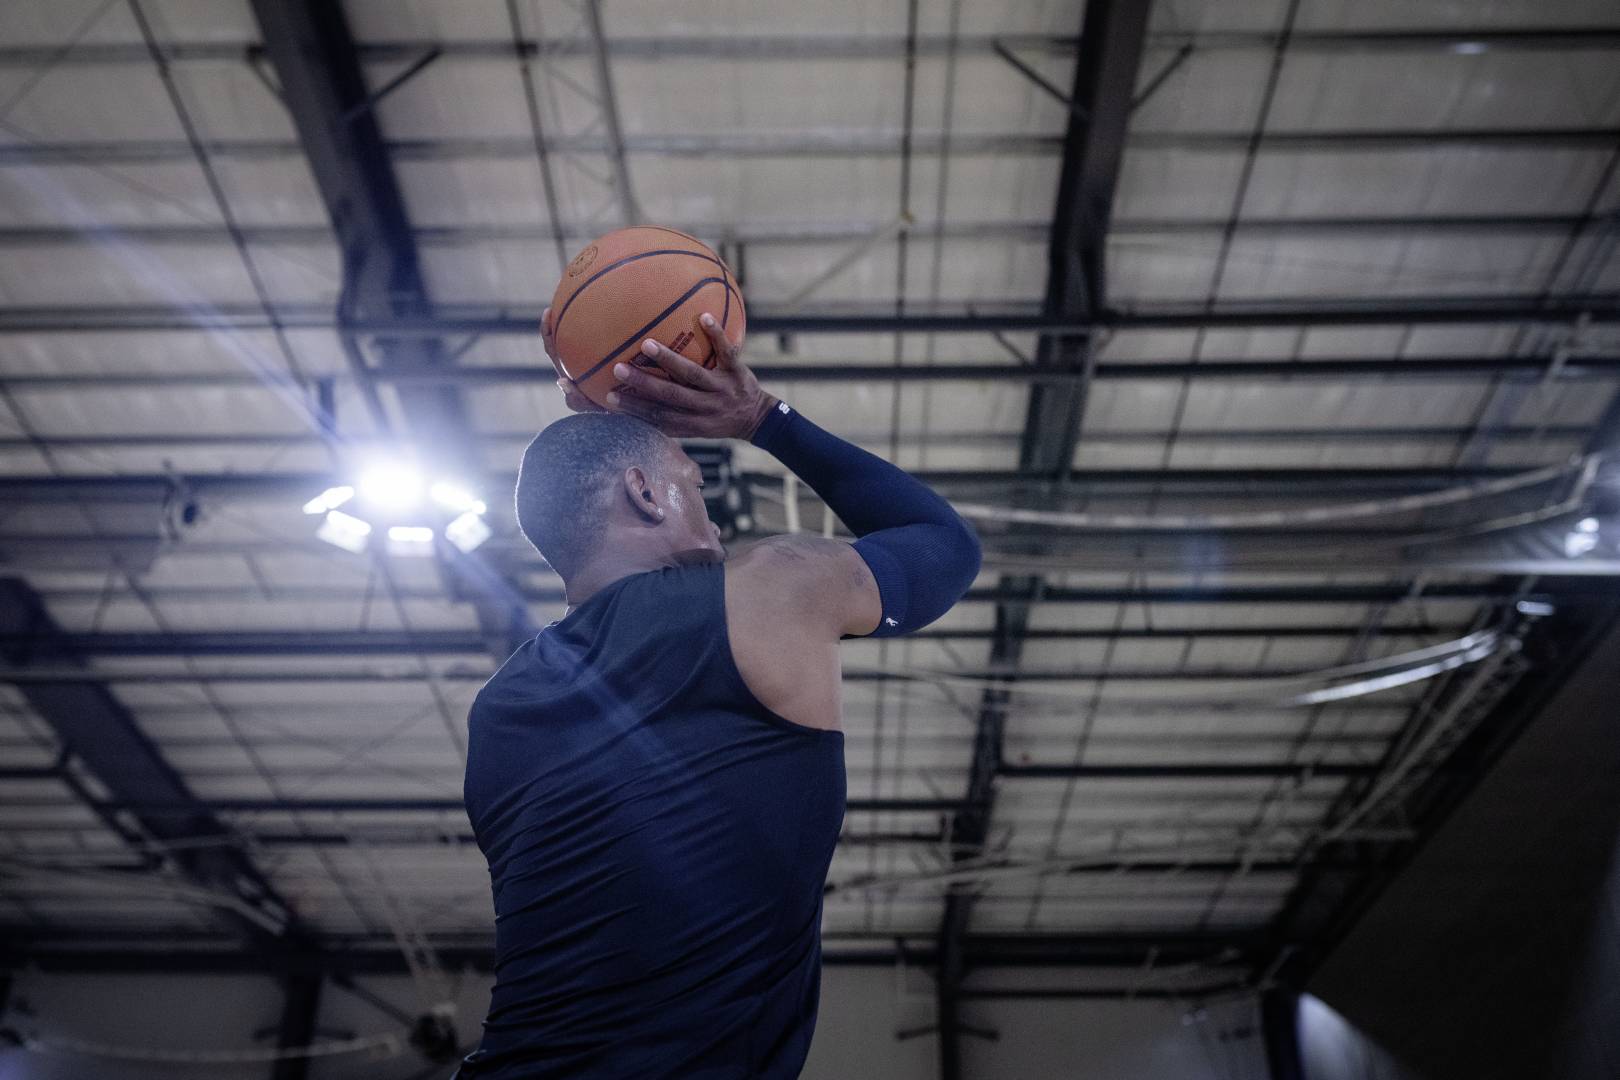 Basketbalspelers met een blauwe armenleeve in een sportzaal beginnen met hun handen boven het hoofd naar de worp